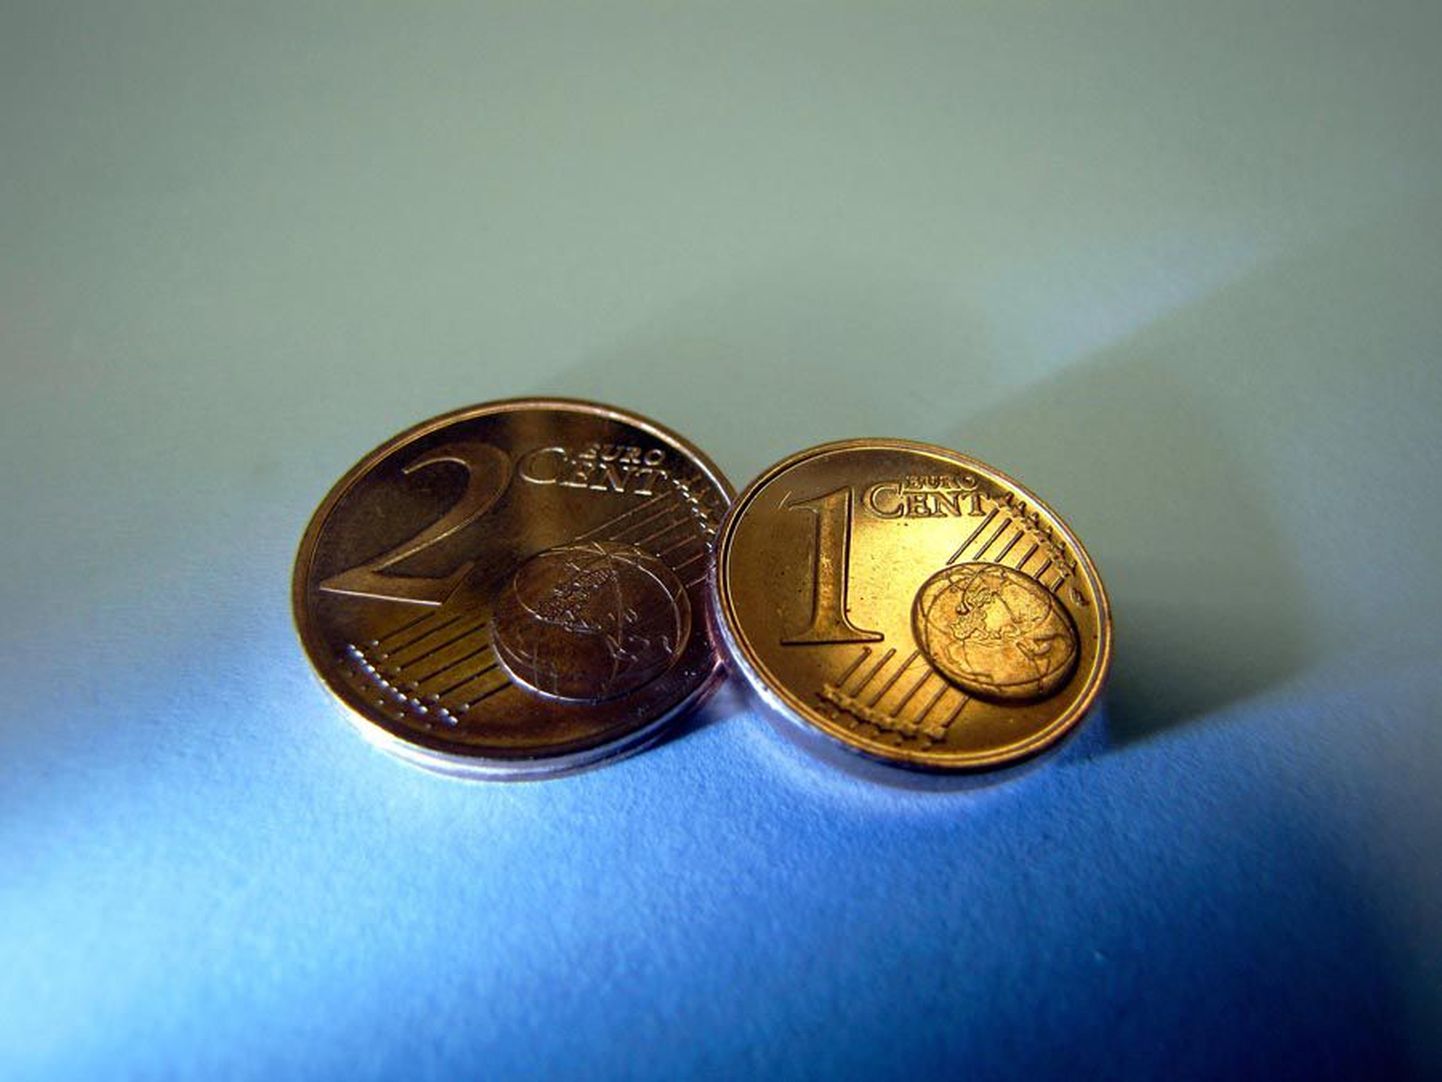 Eestile lähimas eurorahariigis Soomes ei võta kõik kaupmehed vastu kaht pisemat eurosenti. Euroopa Komisjon sellist suhtumist heaks ei kiida.